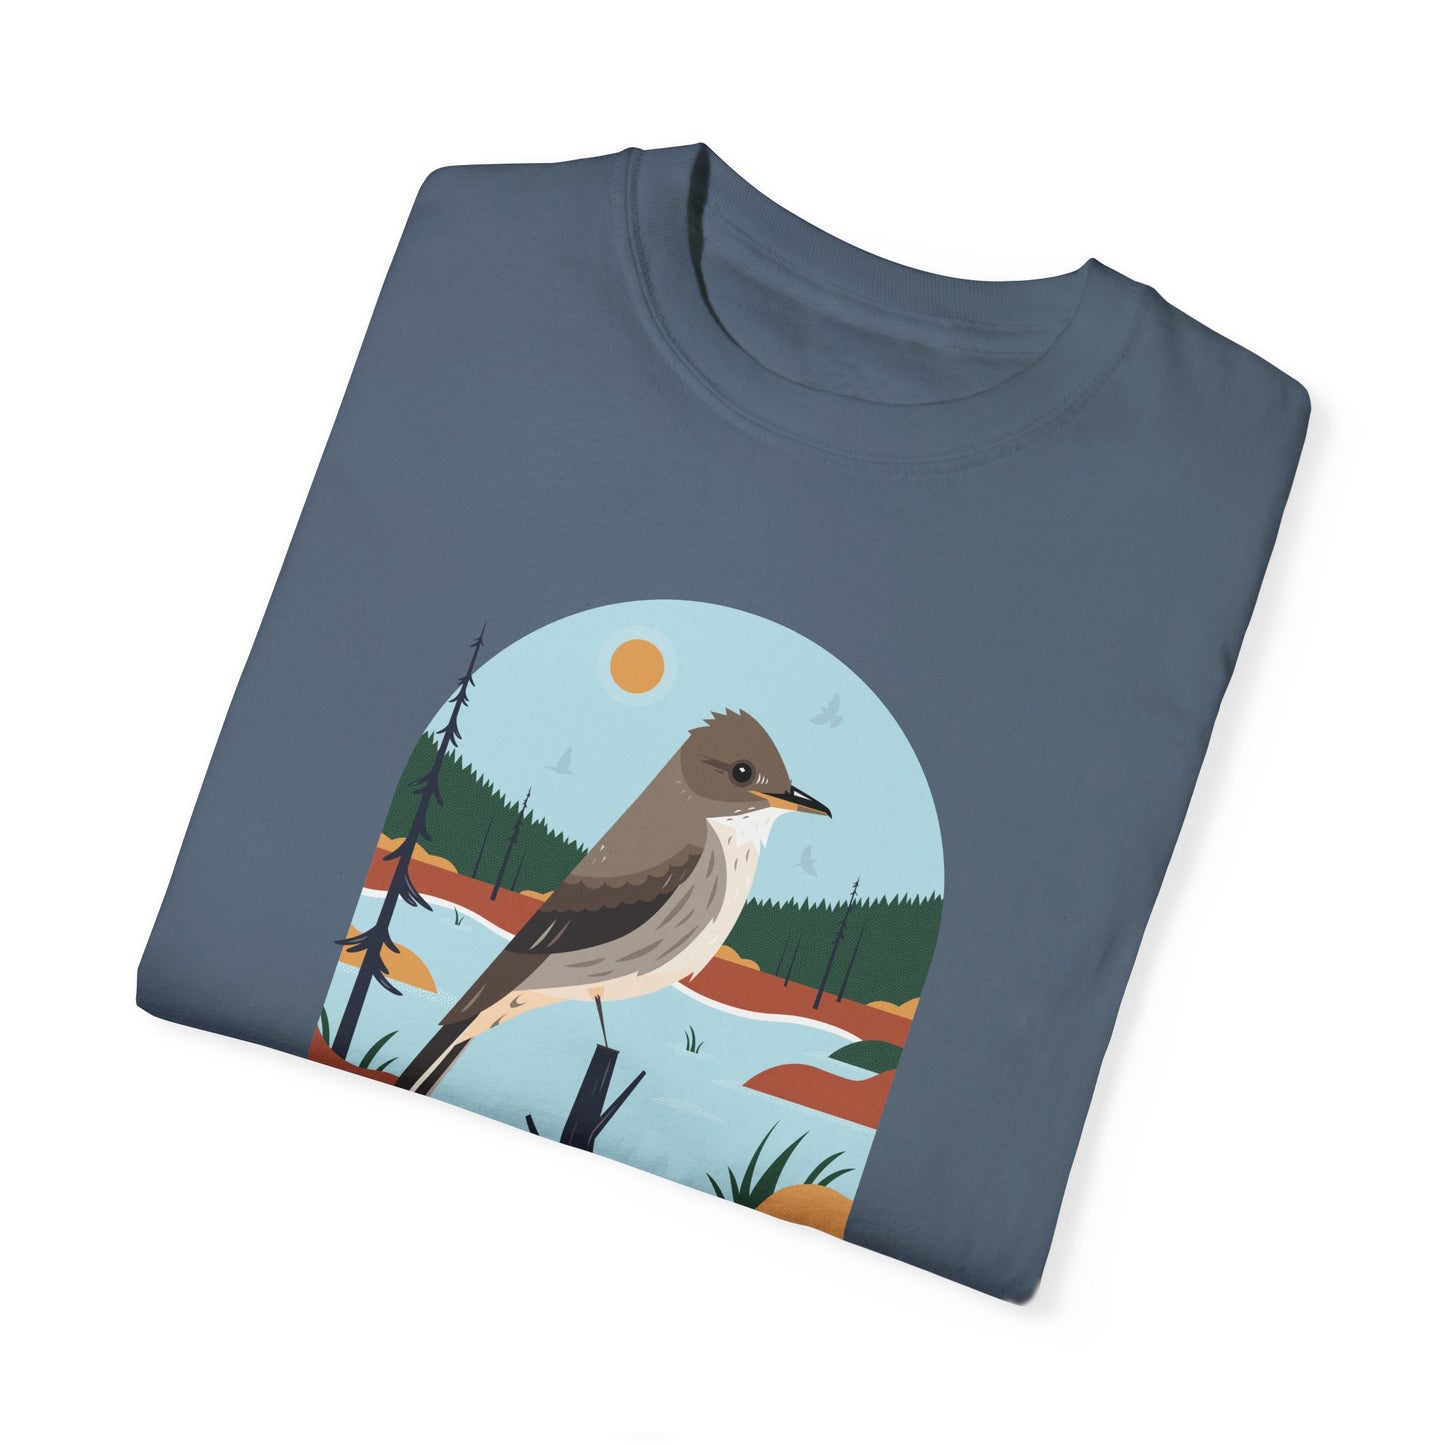 T-shirt Birdathon 2024 - Anglais